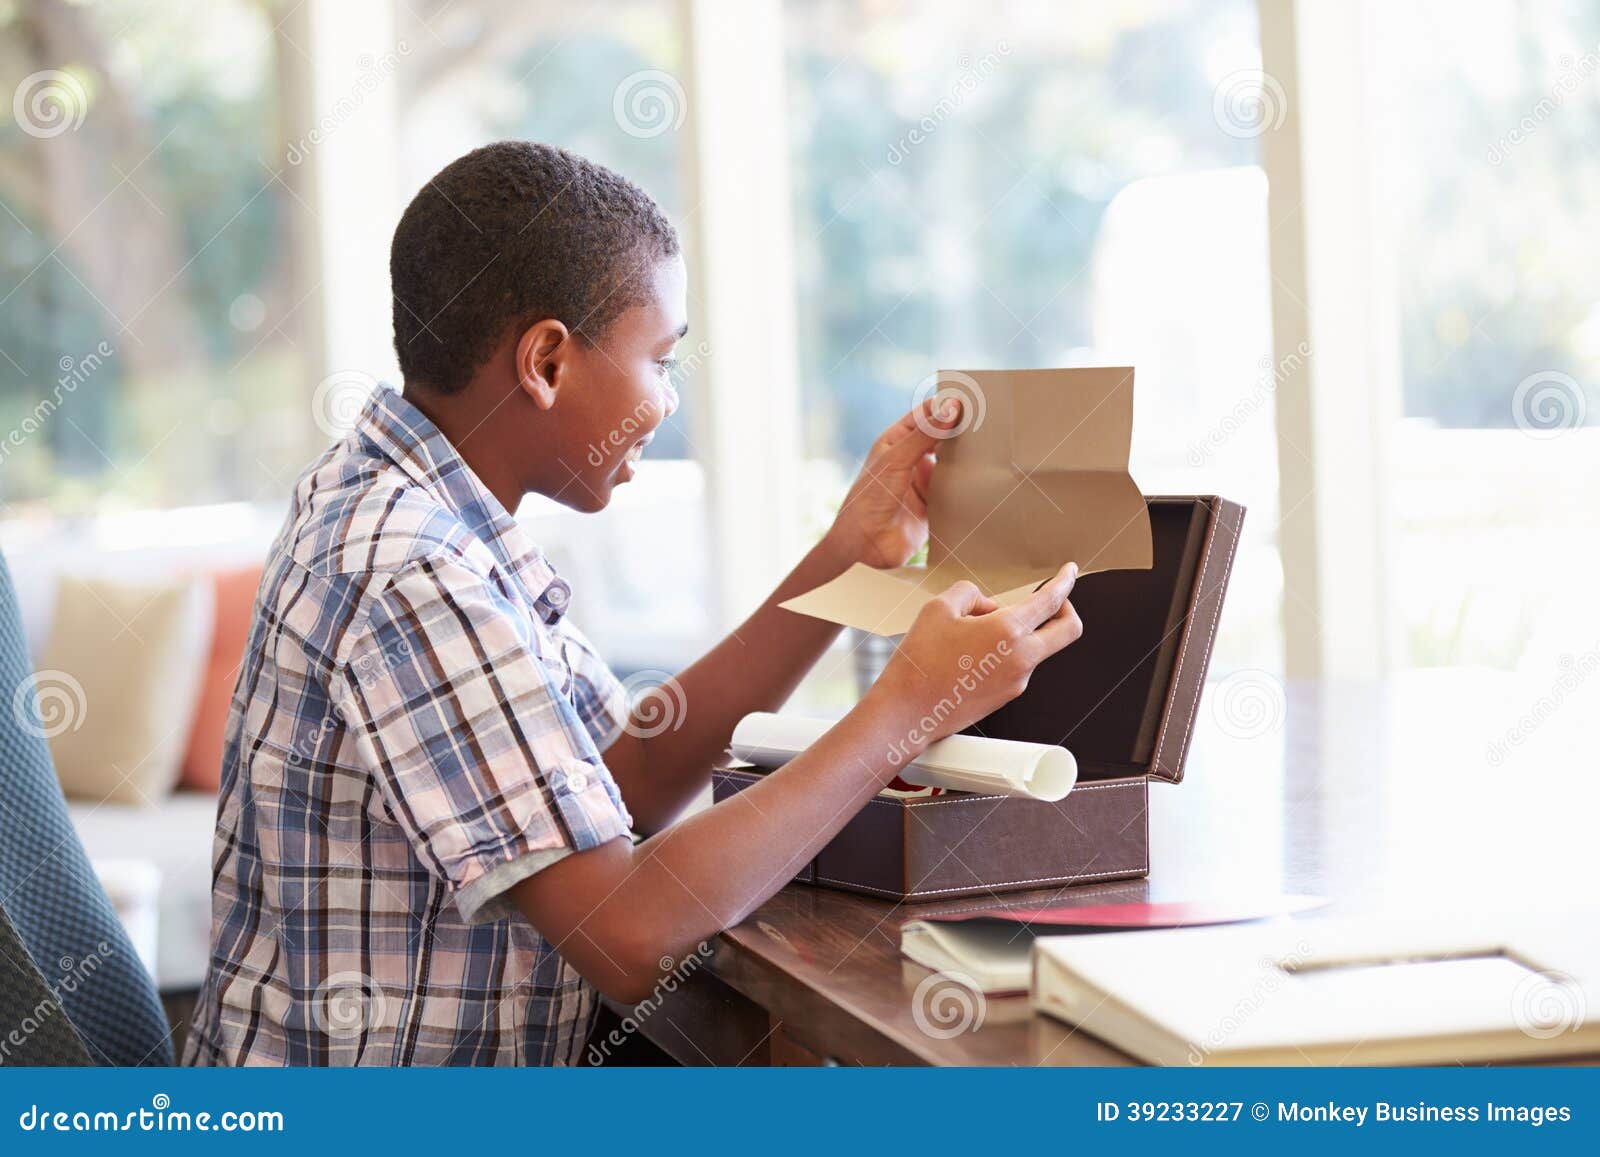 boy looking at letter in keepsake box on desk